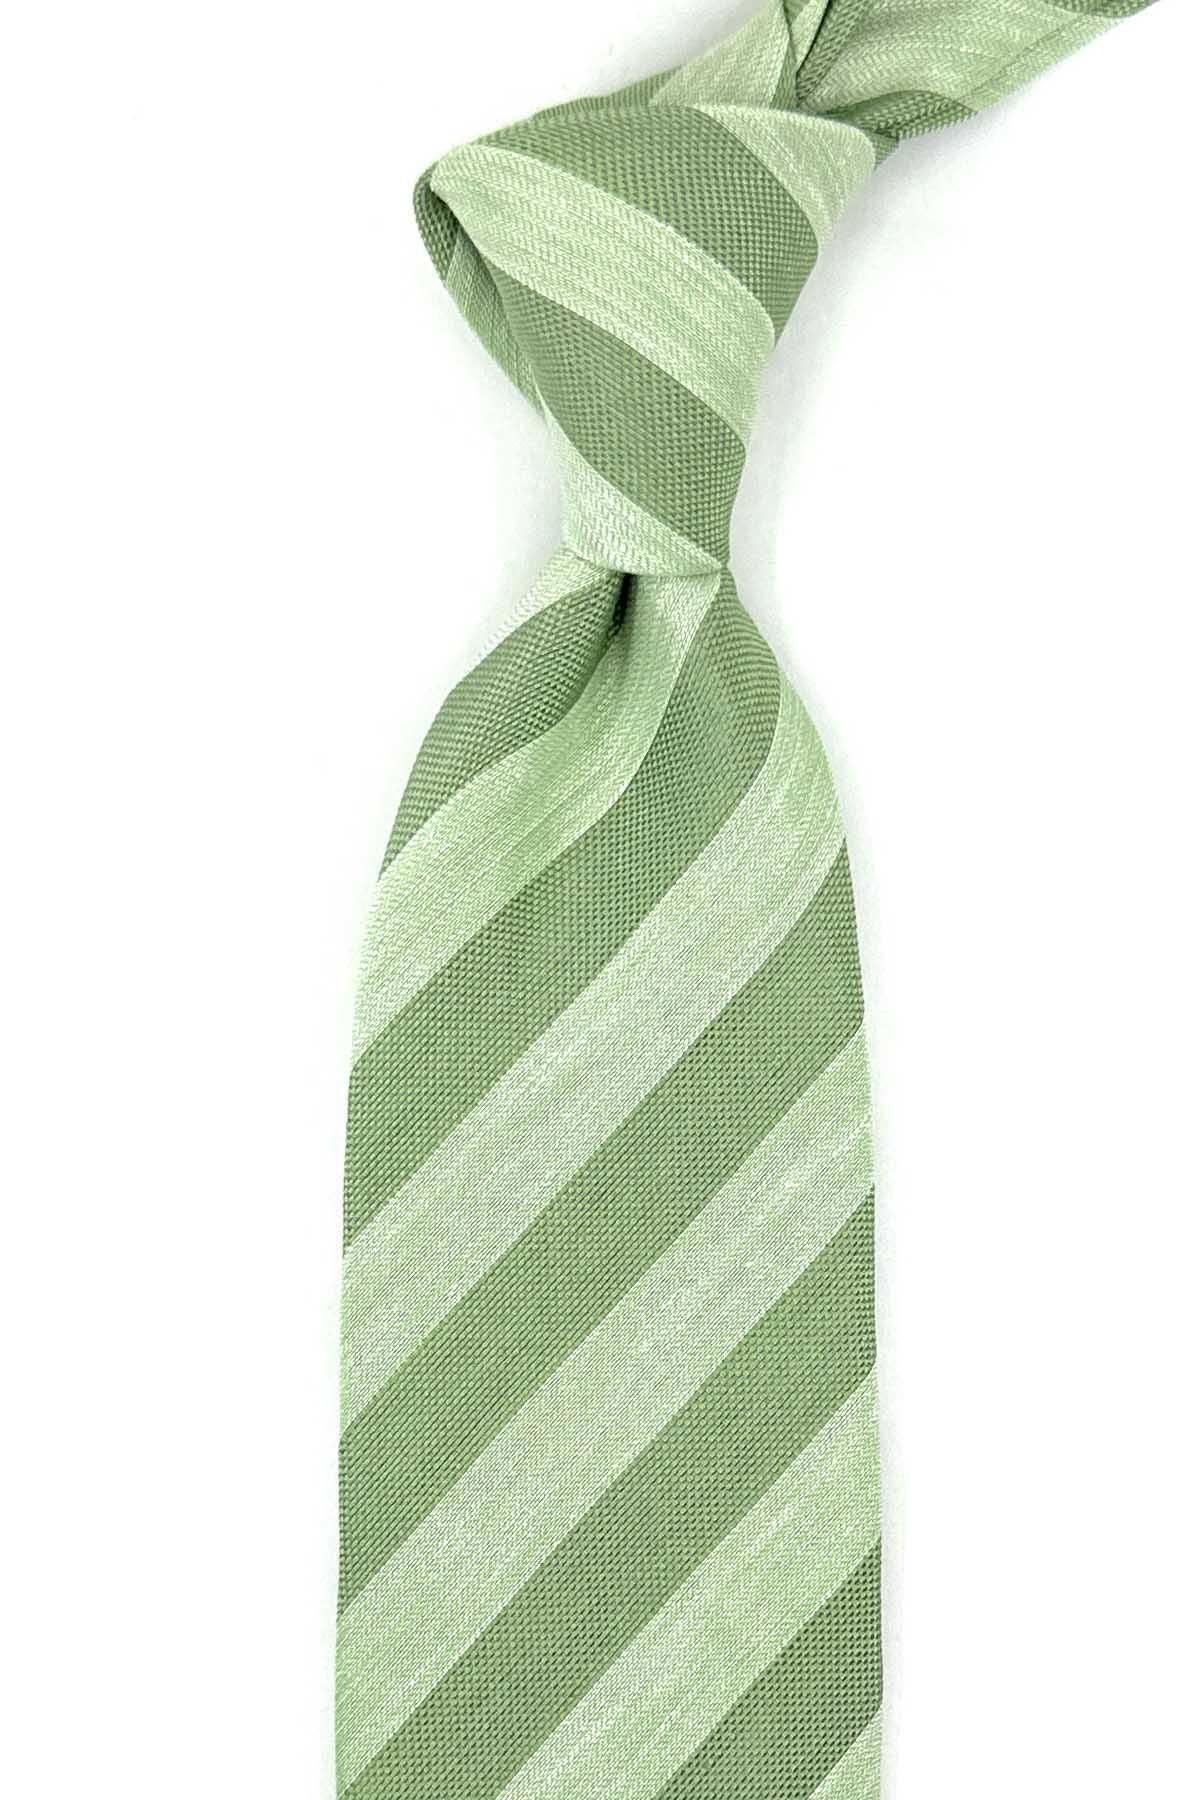 Kravatkolik Cinnabar Style Yeşil Çizgi Desen İtalyan İpek Kravat İK1561